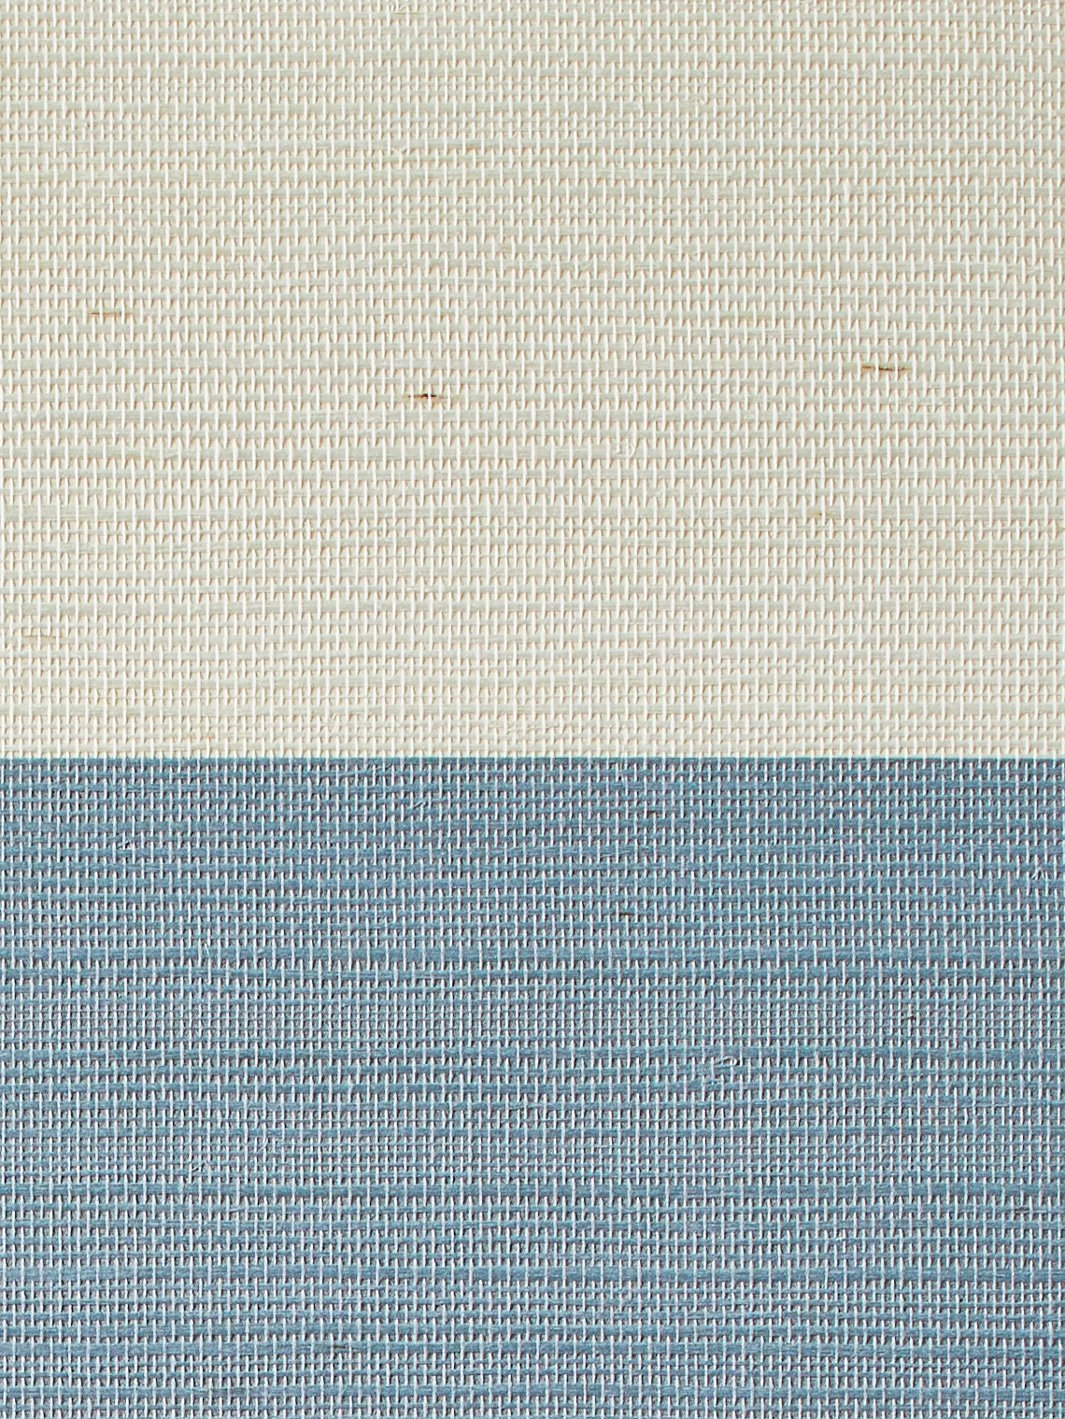 'Wide Stripe' Grasscloth' Wallpaper by Wallshoppe - French Blue